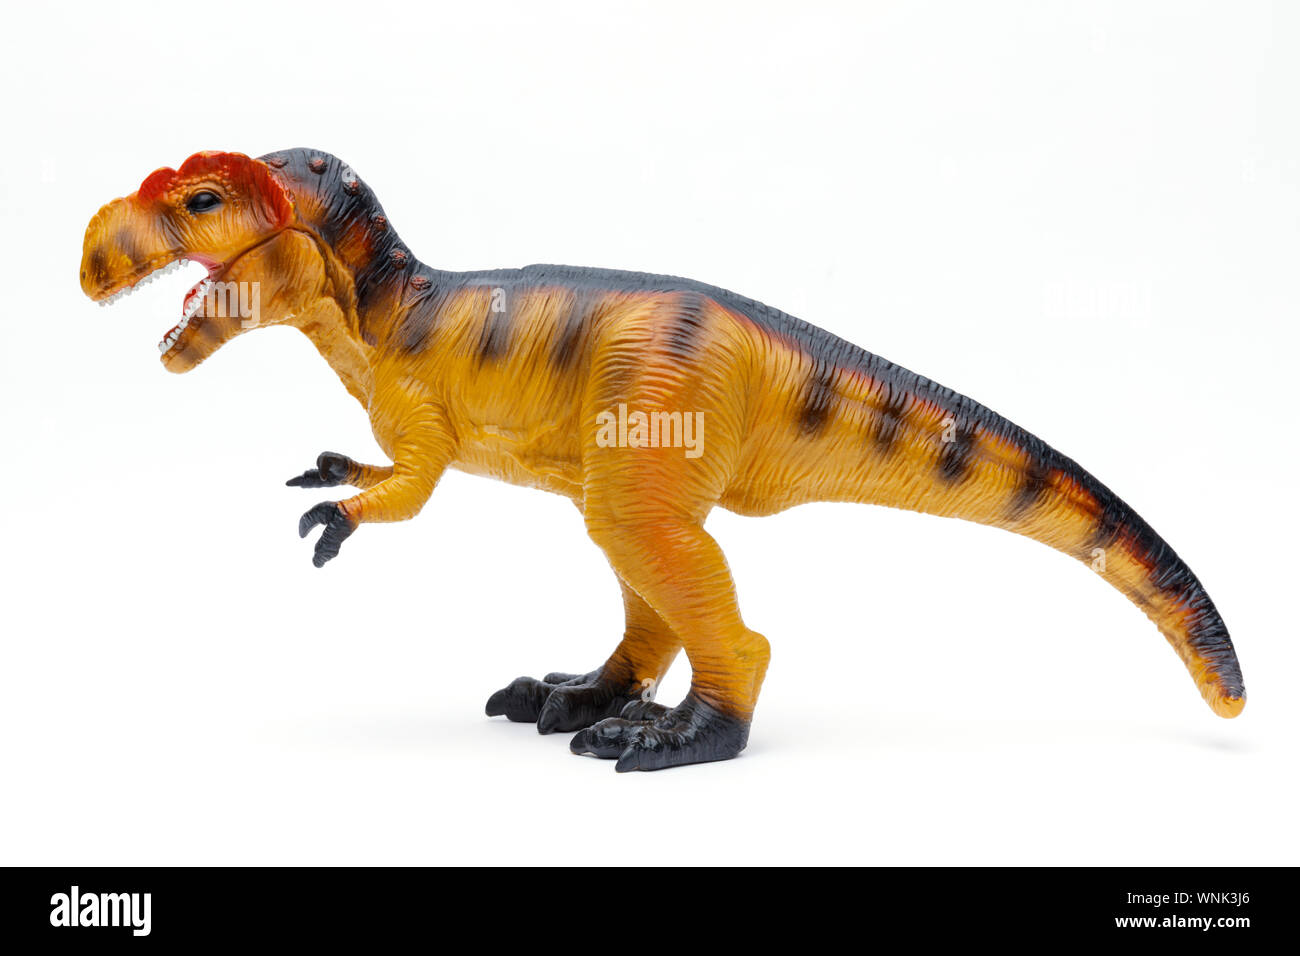 Tourné sur le côté d'un jouet Tyrannosaurus Rex et shot isolé sur fond blanc Banque D'Images